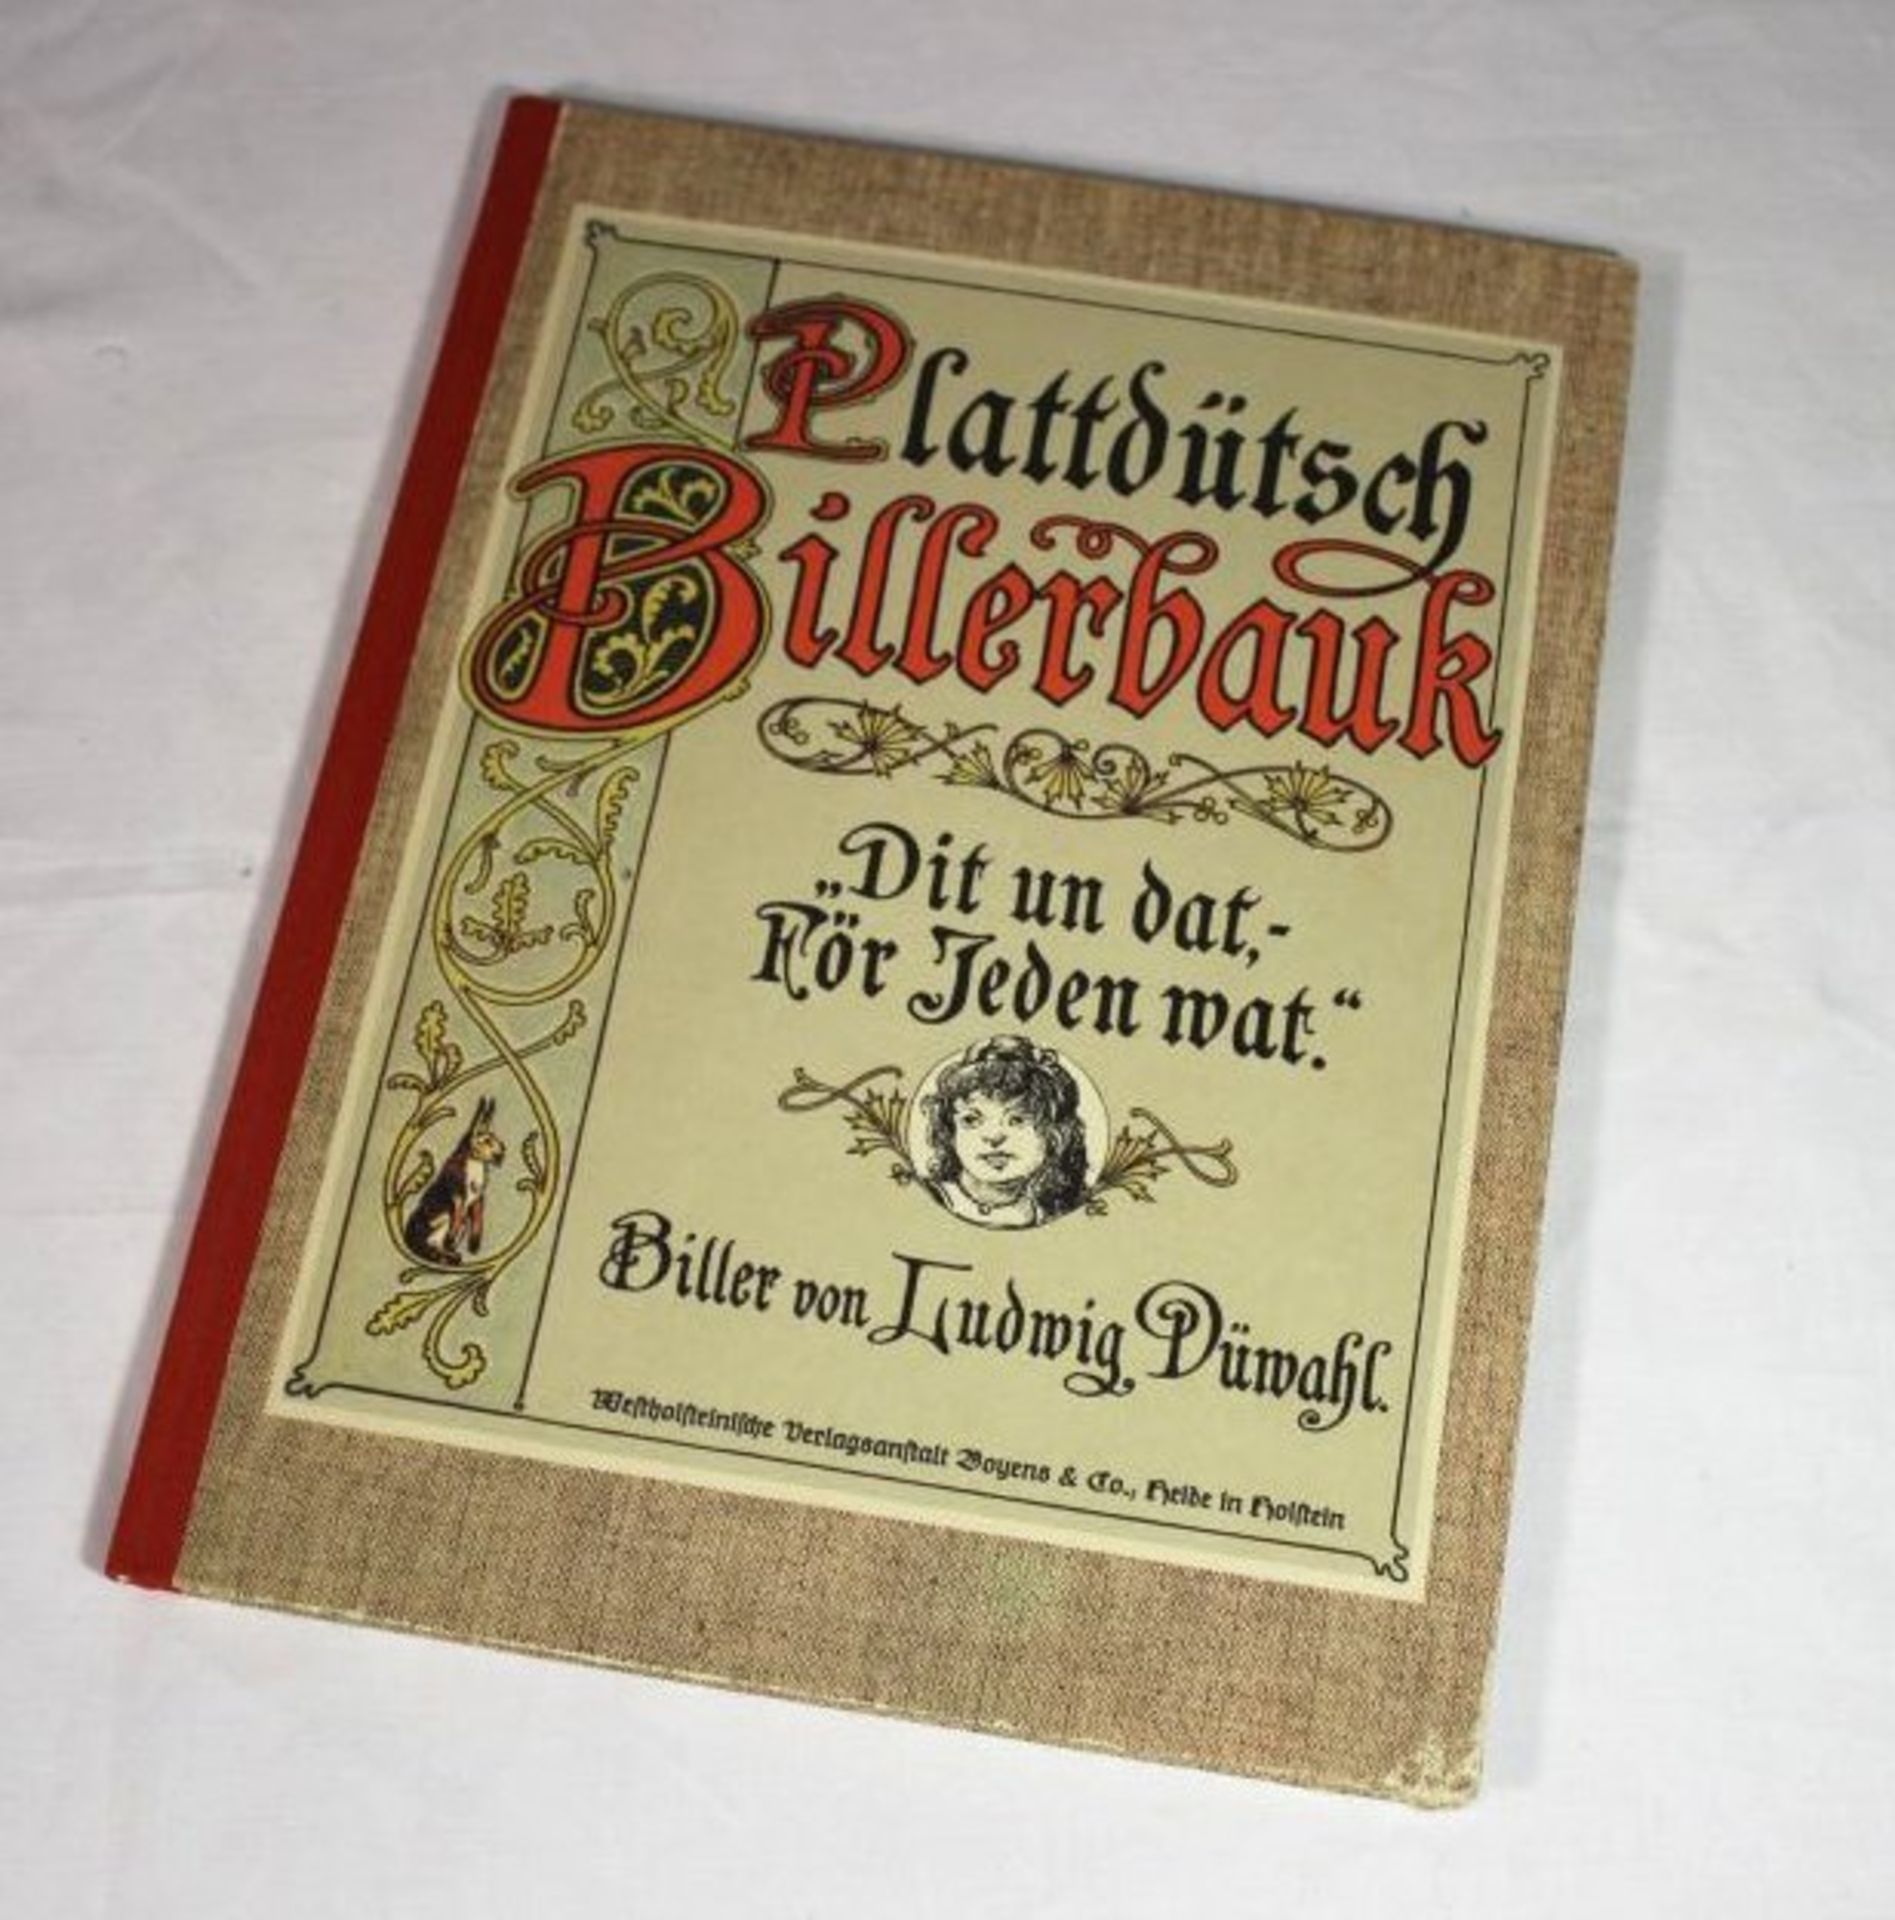 Plattdütsch Billerbauk - Dit un dat -För jeden wat, Reprint von 1981- - -22.61 % buyer's premium